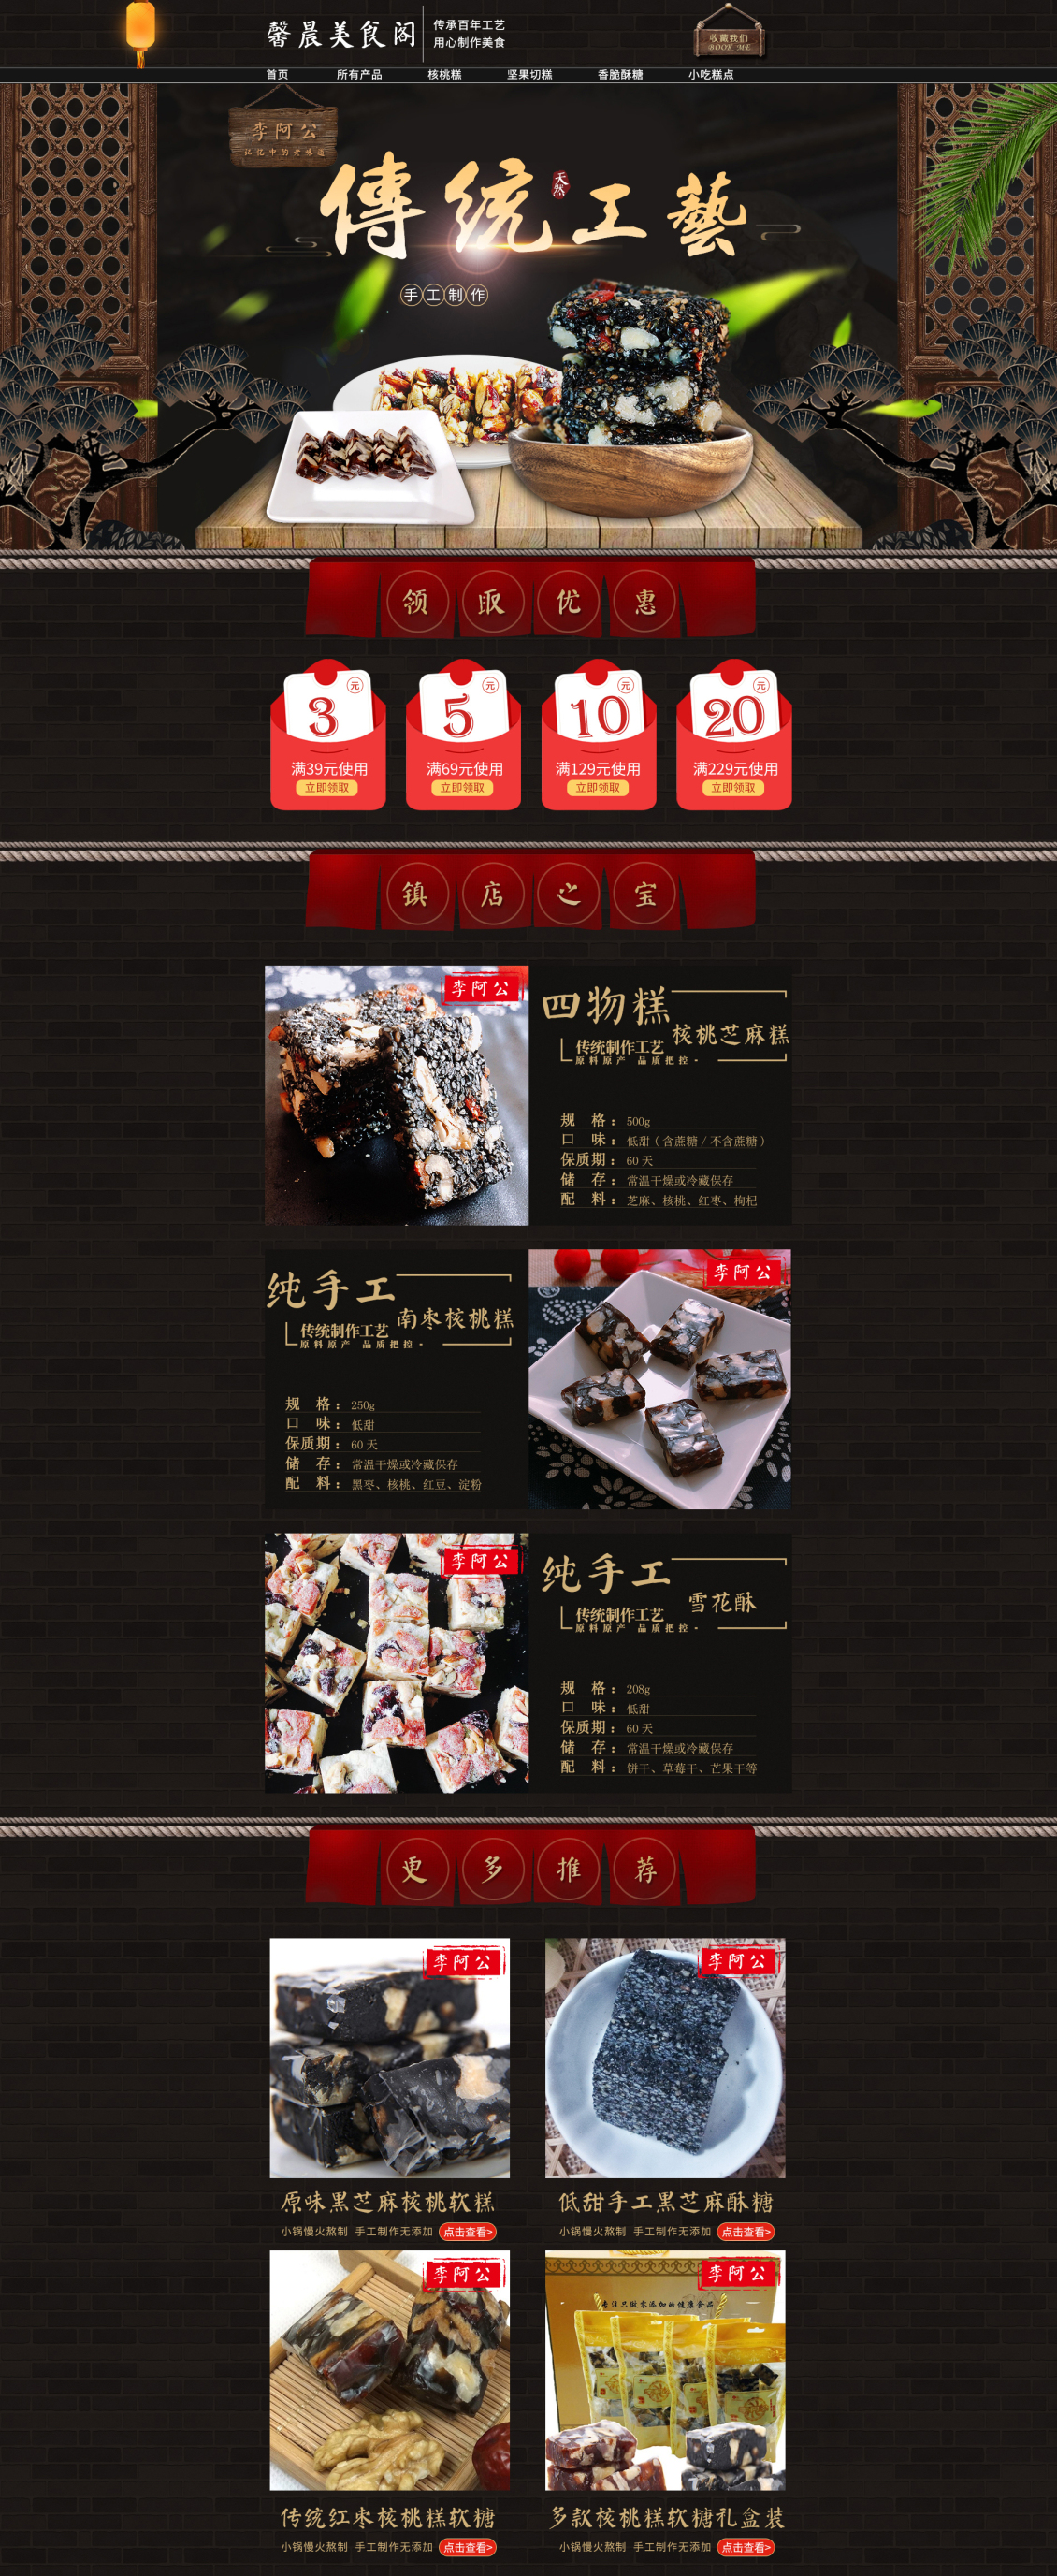 淘宝美工阿潇传统食品首页制作中国风作品